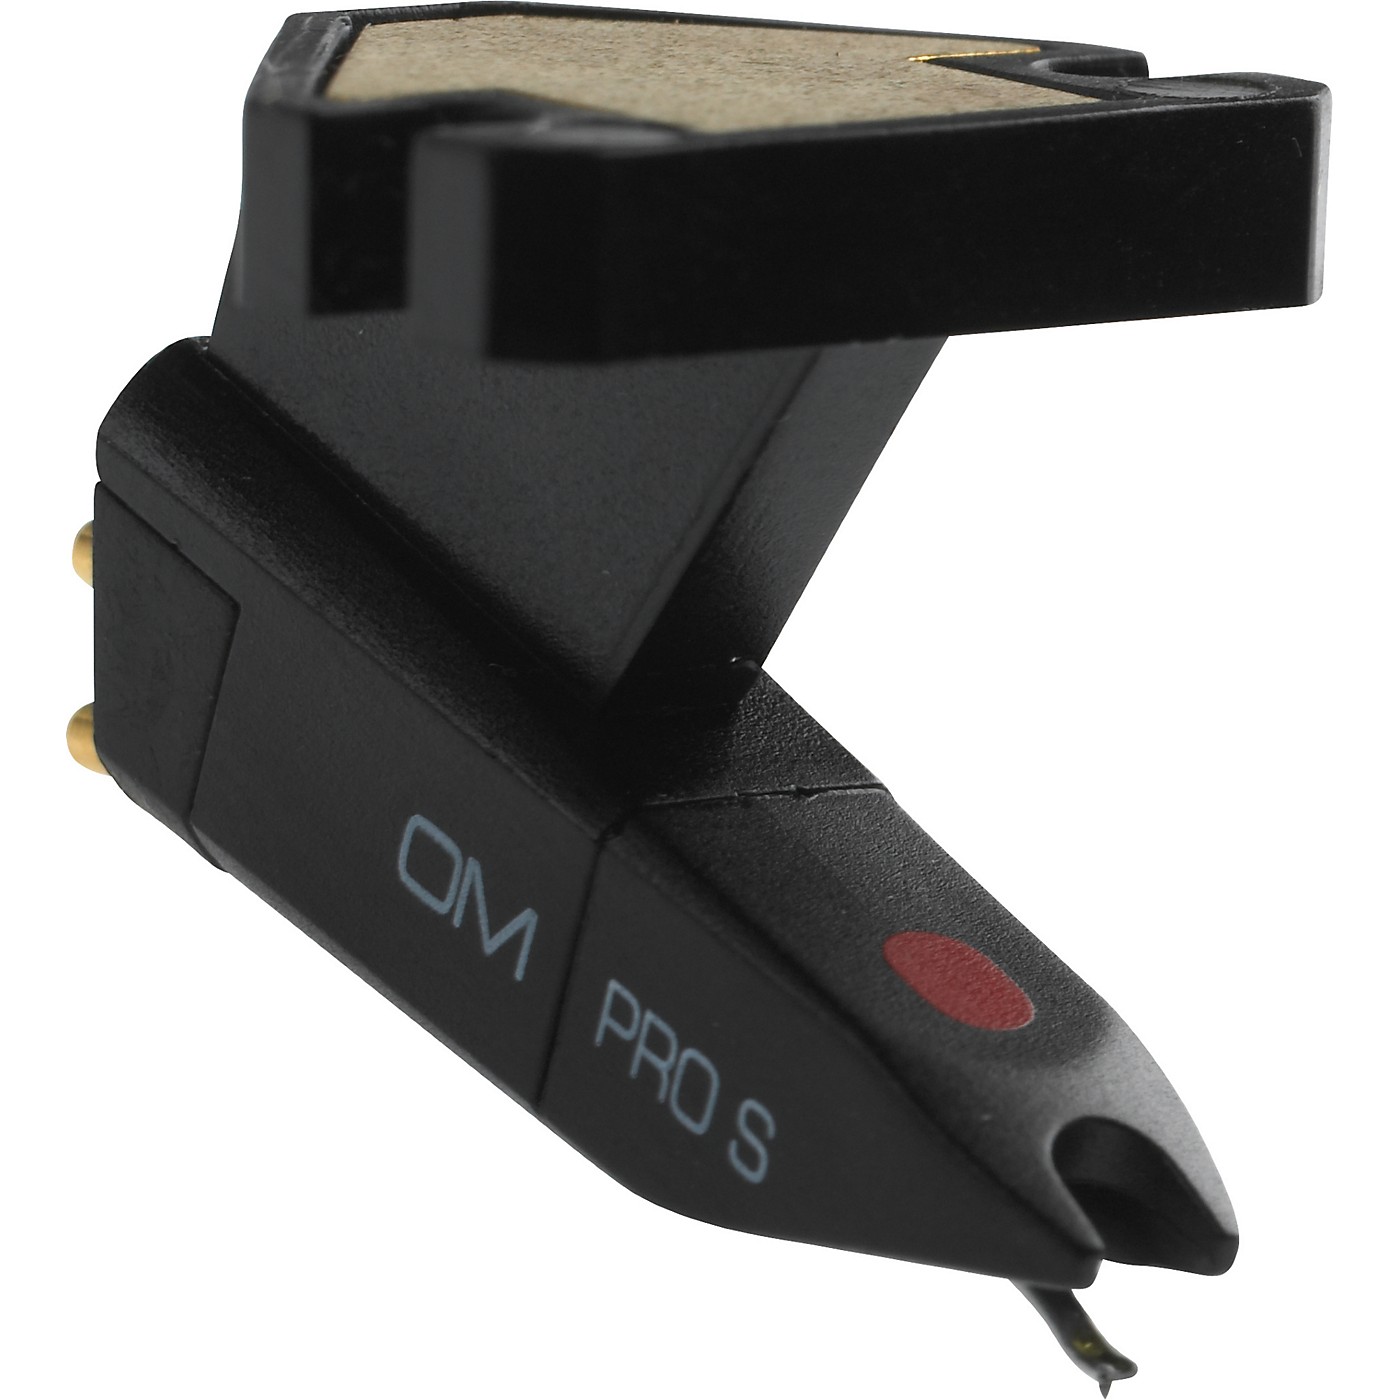 Ortofon OM Pro S Single Cartridge thumbnail